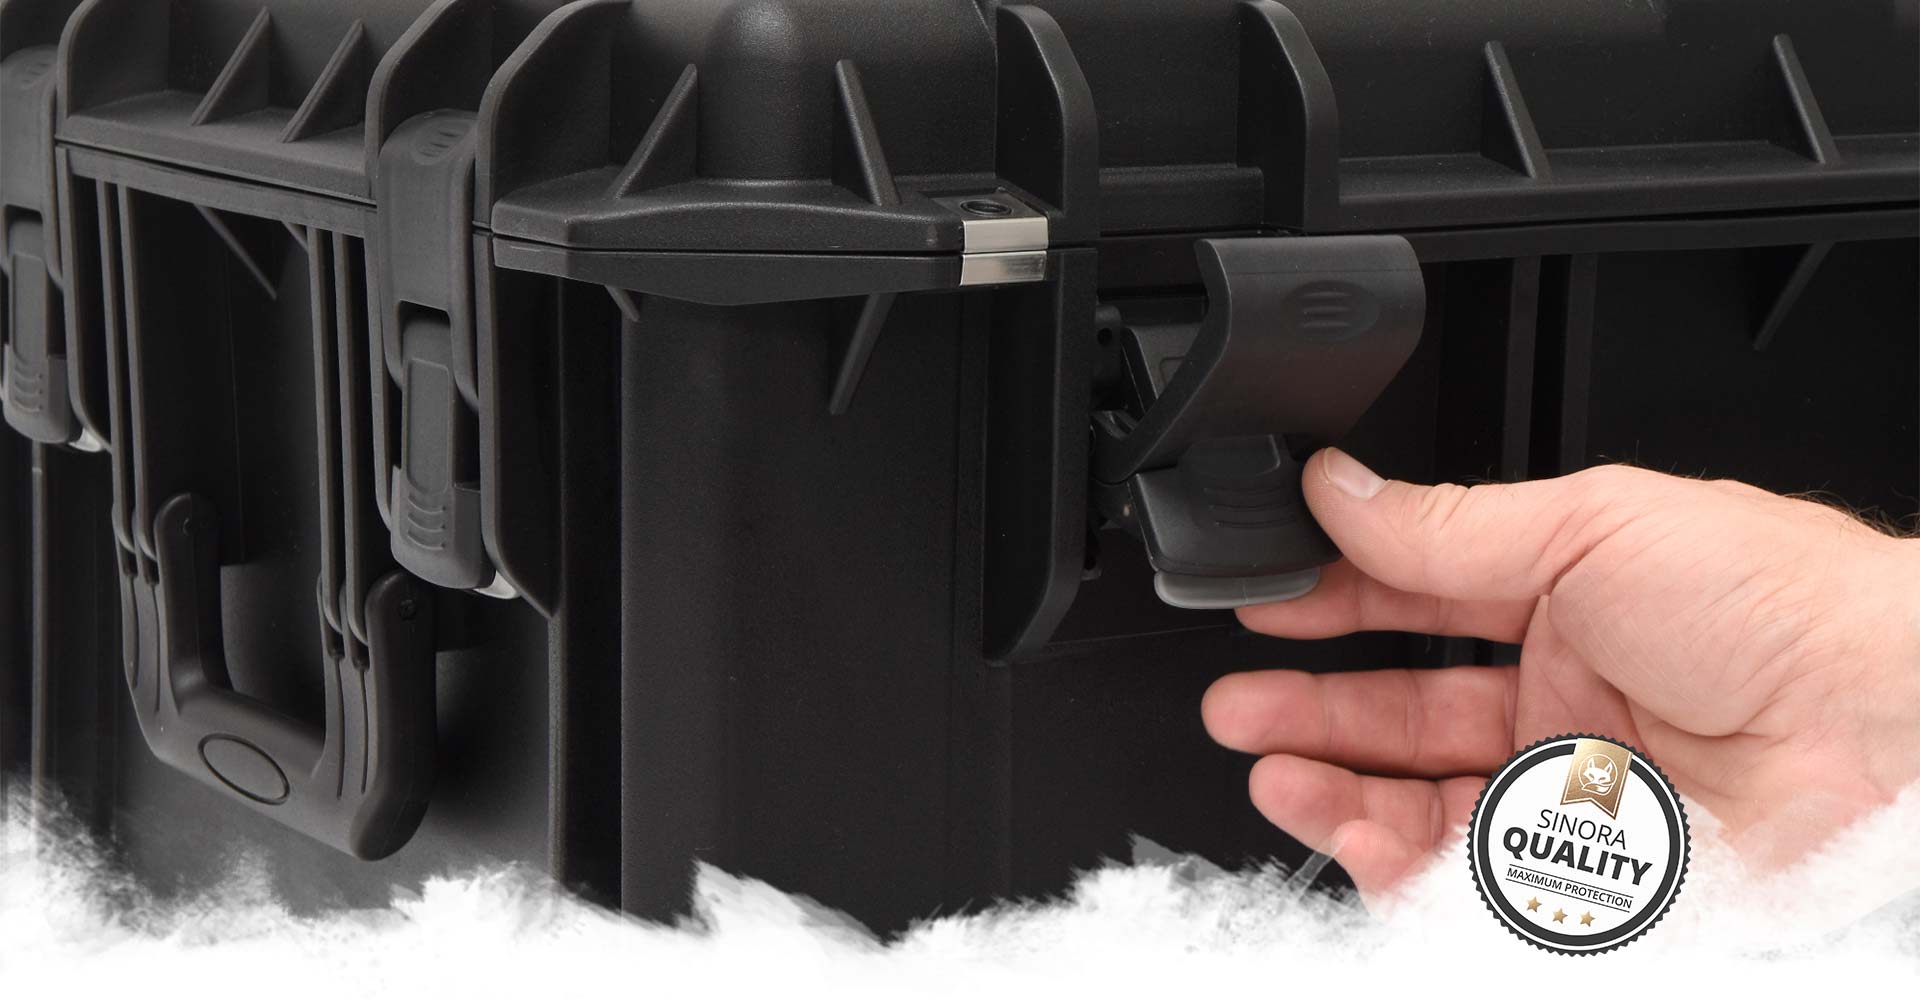 Sinora Kunststoff-Koffer bieten intuitve und zuverlässige Qualität